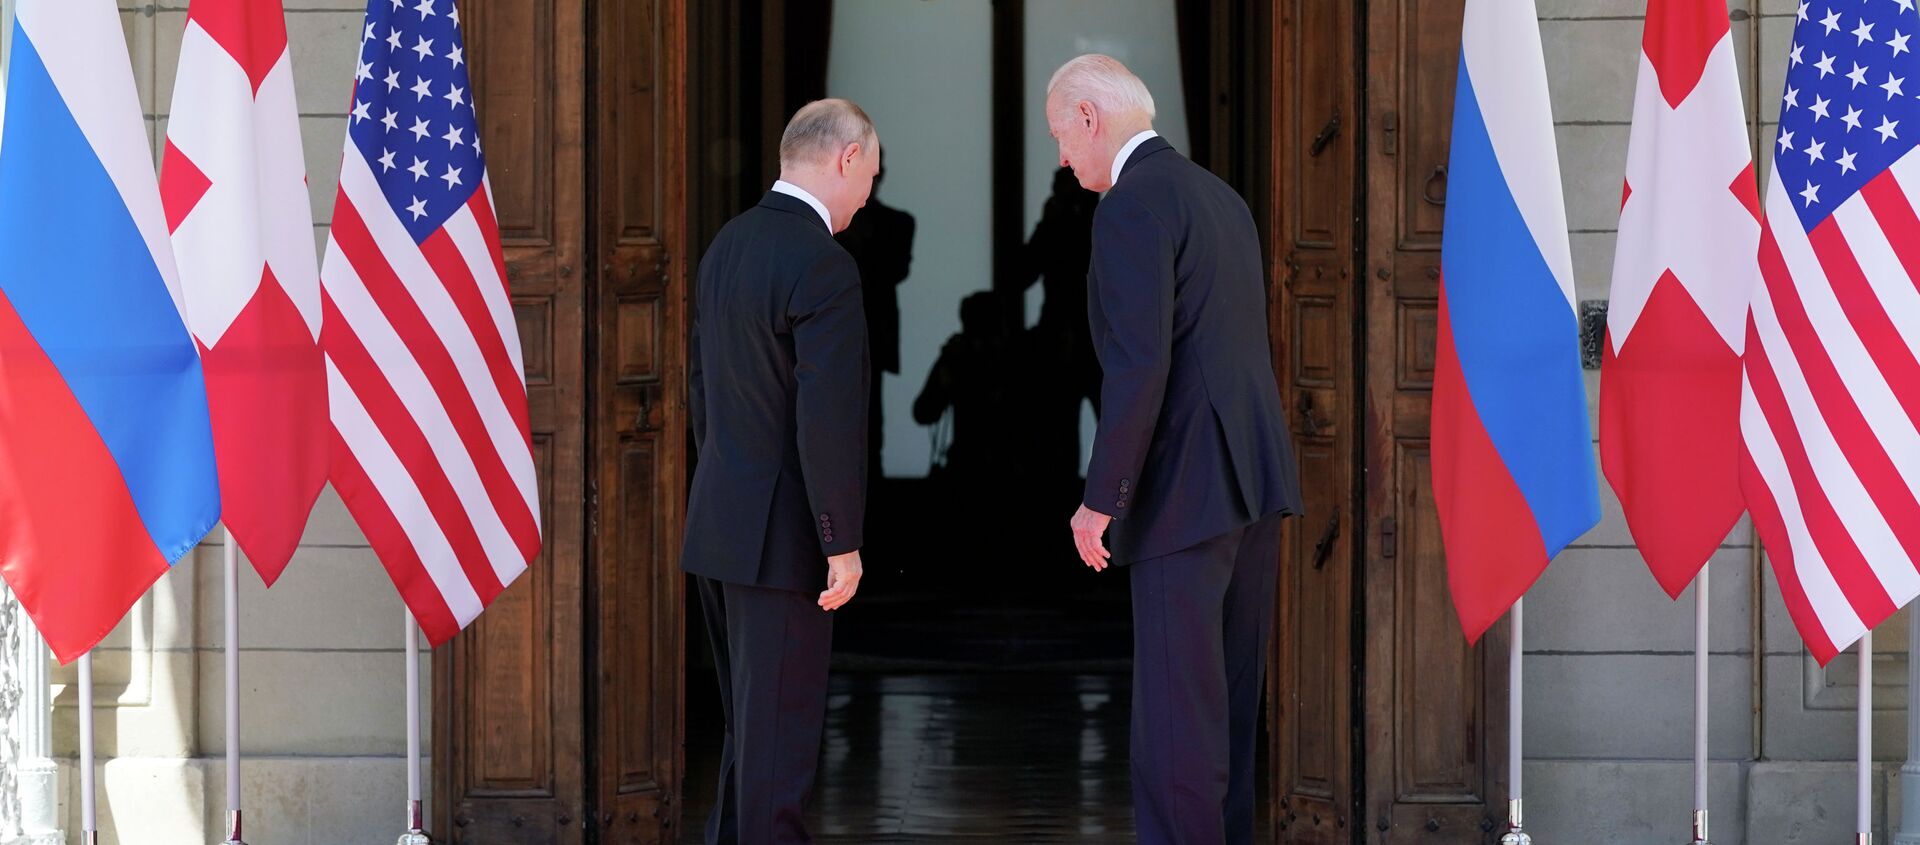 Президент США Джо Байден и президент России Владимир Путин встречаются на саммите США и России на вилле La Grange в Женеве, Швейцария. 16 июня 2021 года - Sputnik Кыргызстан, 1920, 17.06.2021